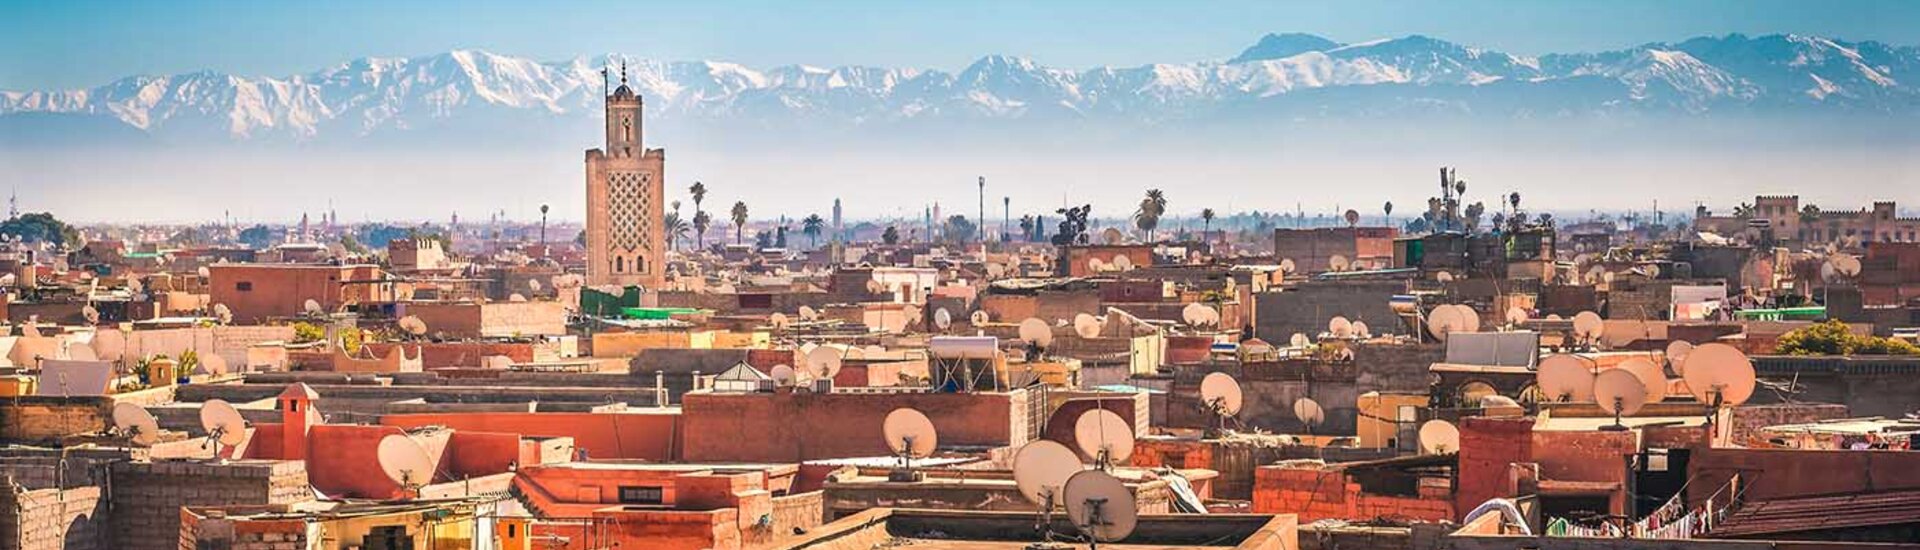 Marrakesch mit Berge im Hintergrund, Marokko